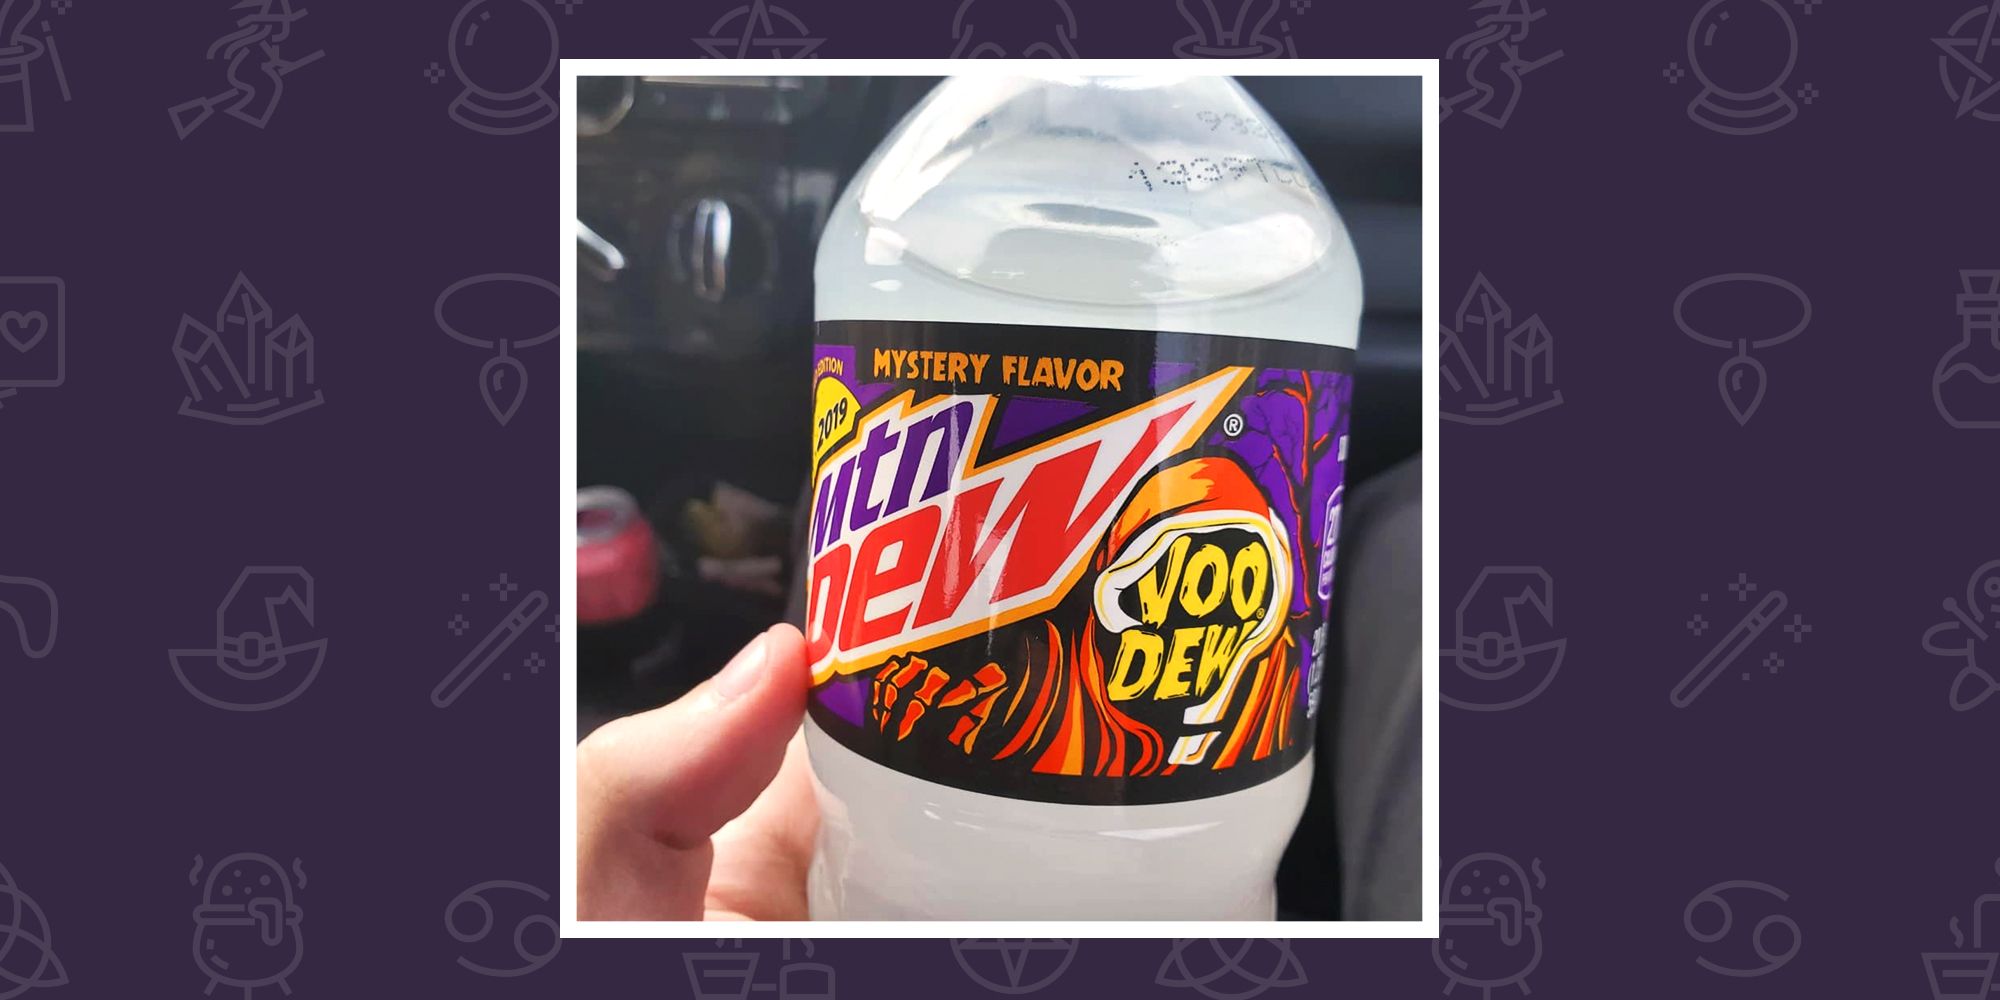 mountain dew voodew flavor 2019